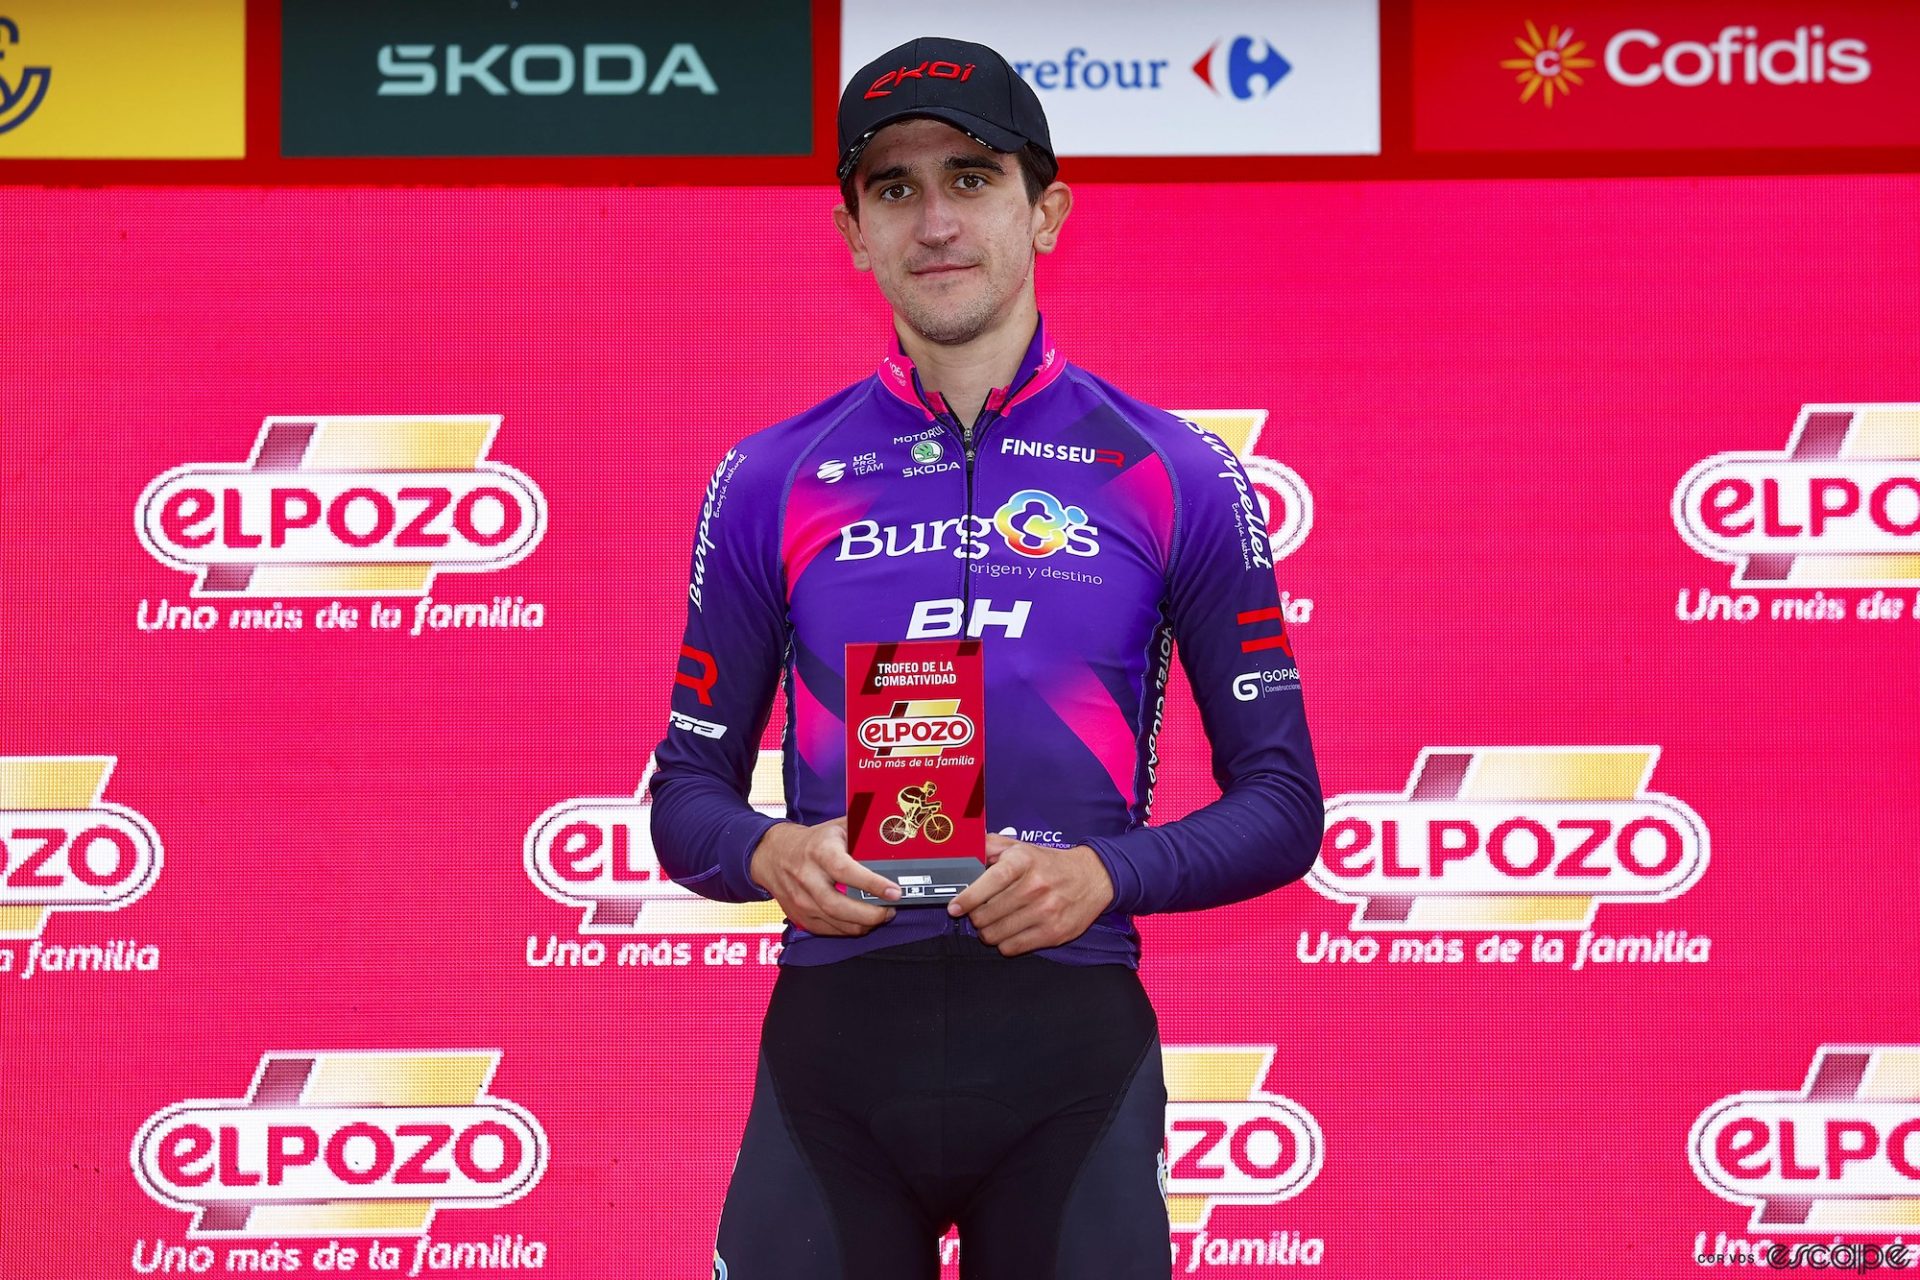 Pelayo Sánchez at the Vuelta a España.